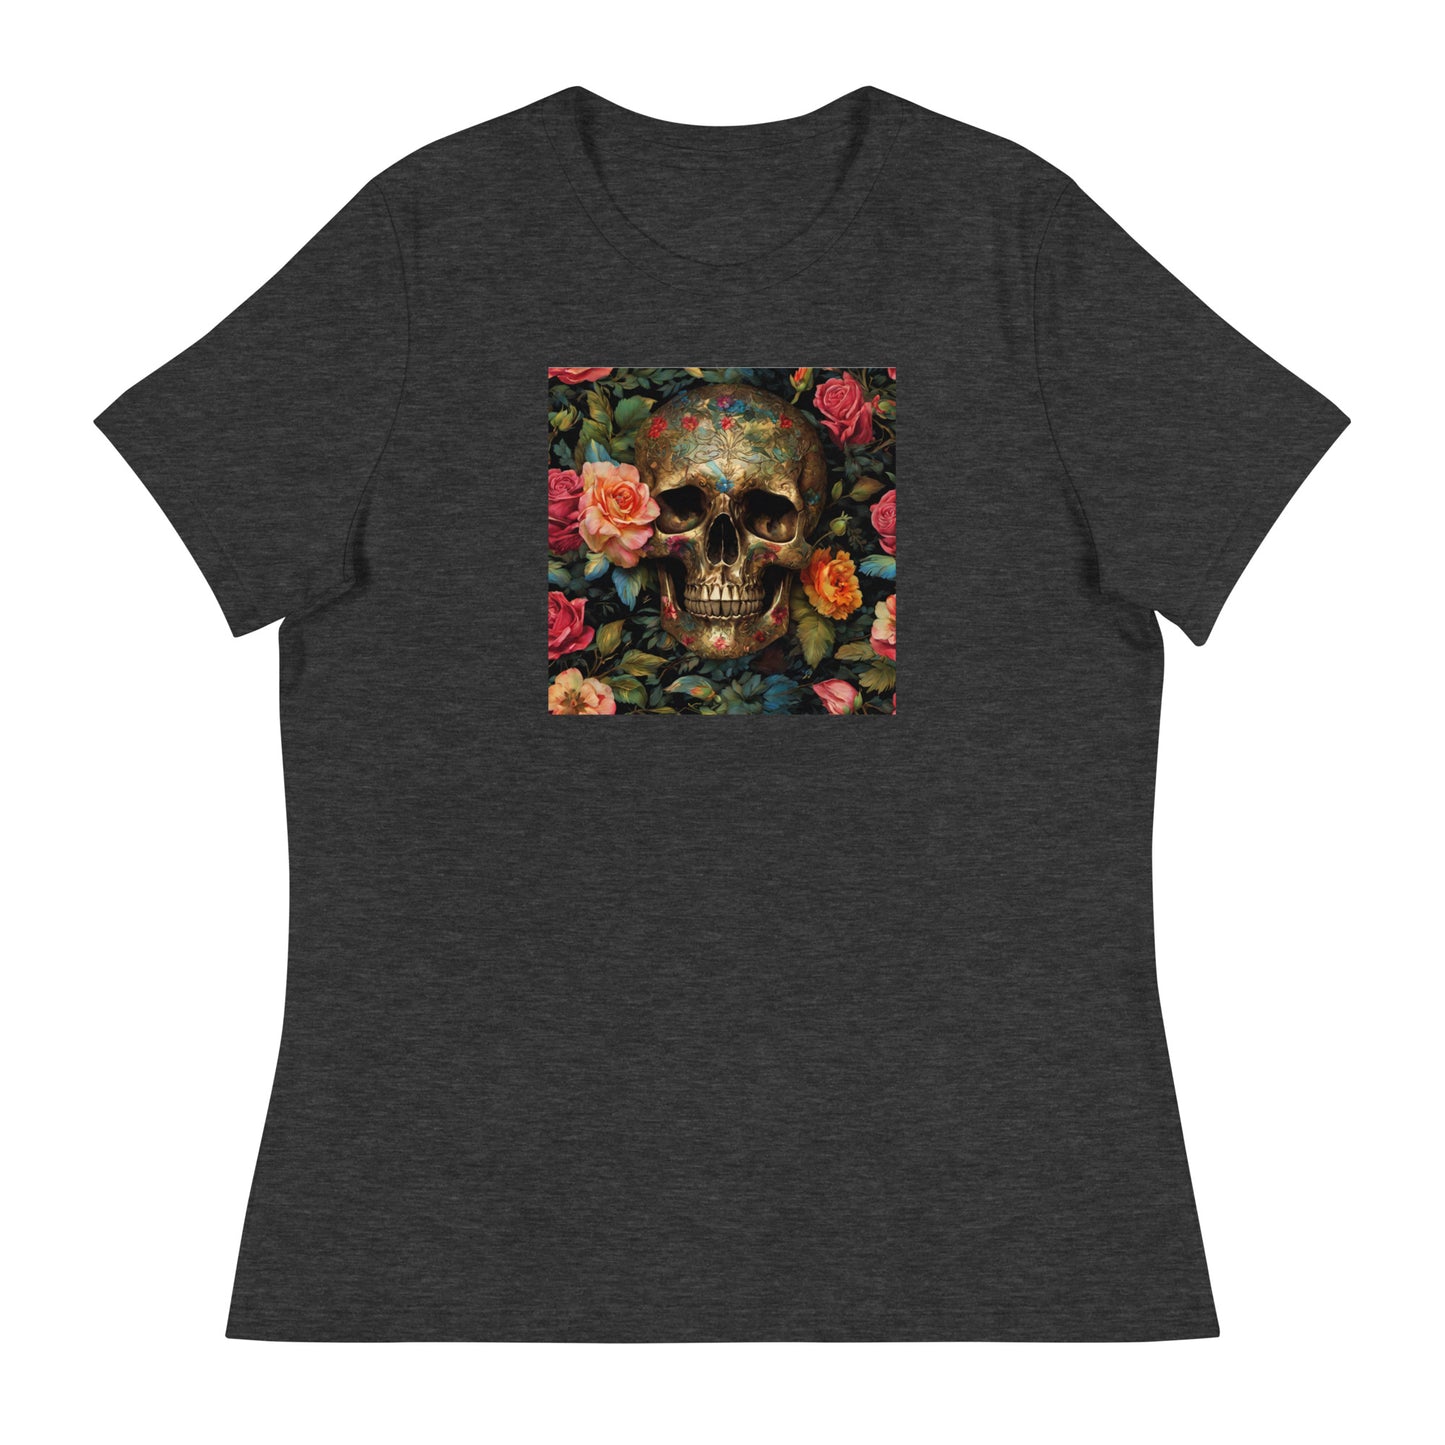 Skull and Roses Graphic Women's T-Shirt Dark Grey Heather